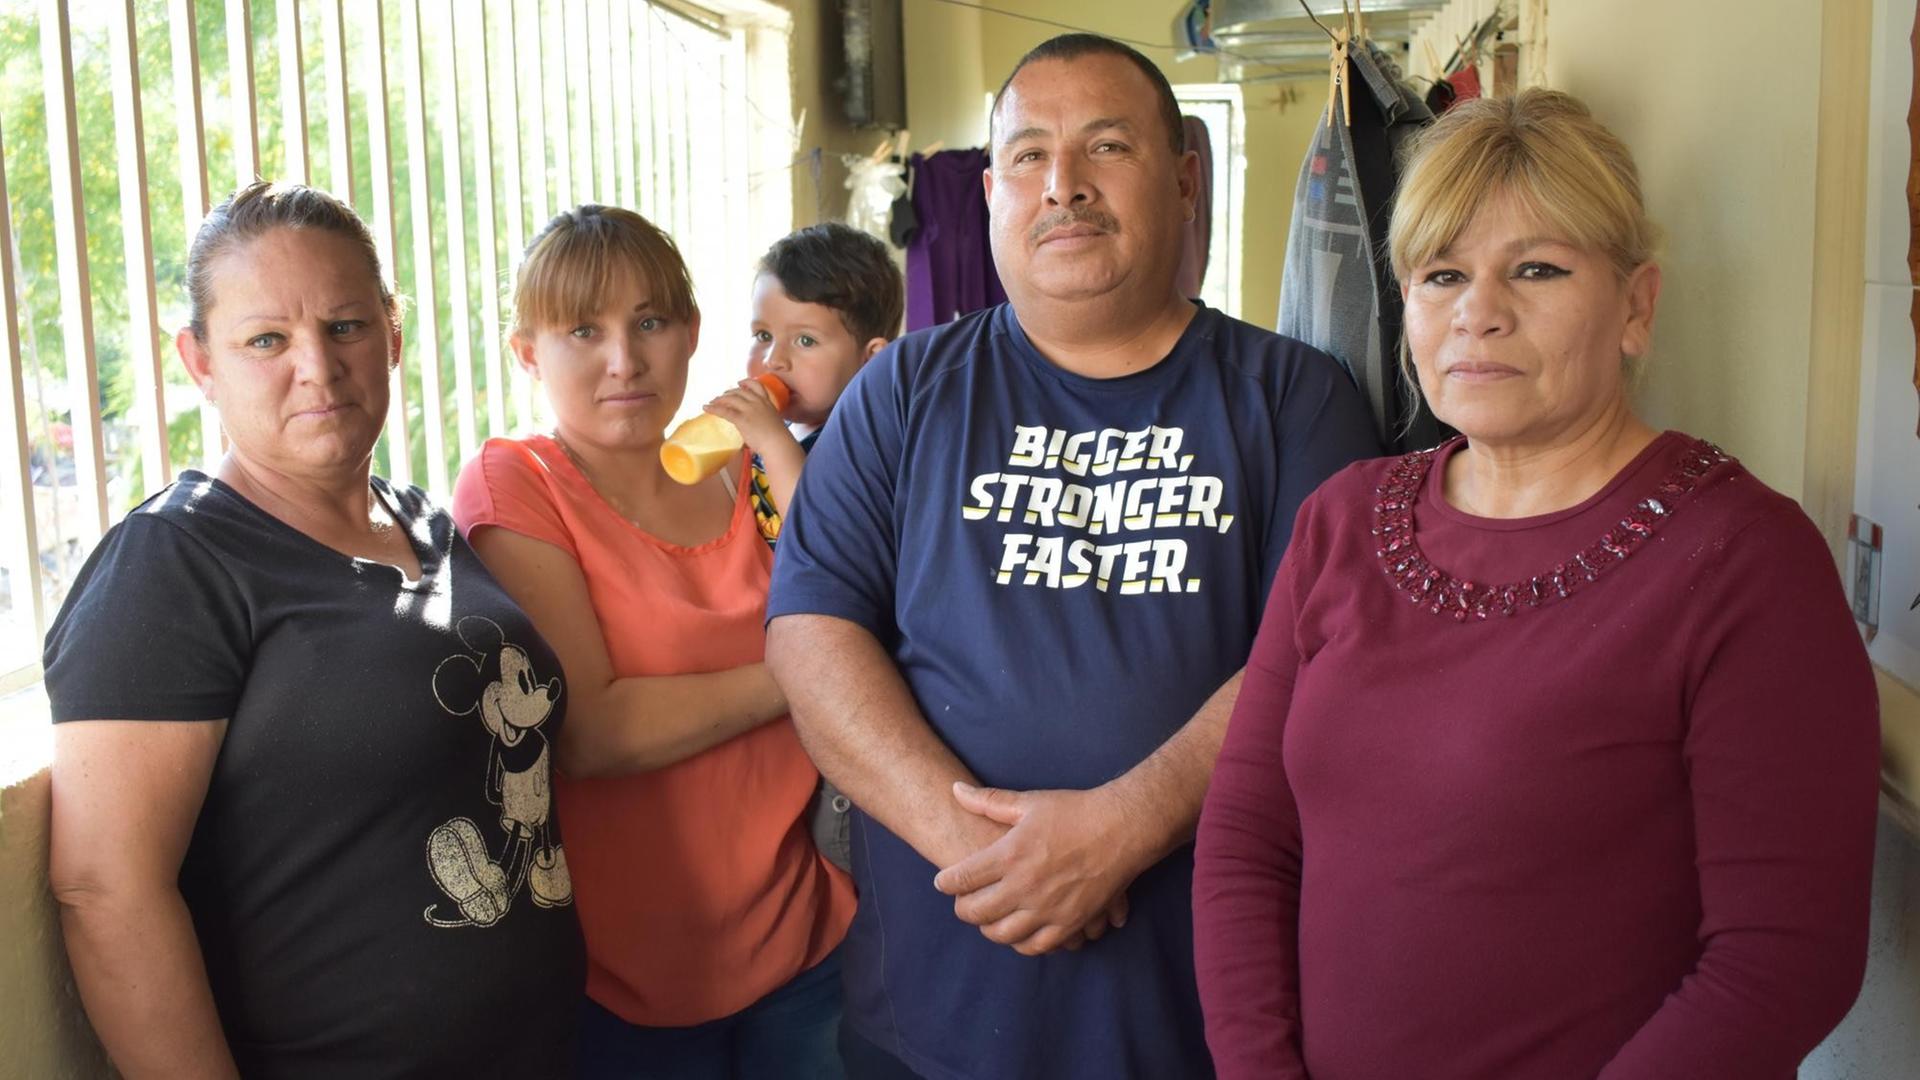 Folteropfer Cristel Piña mit Kind und Familie.